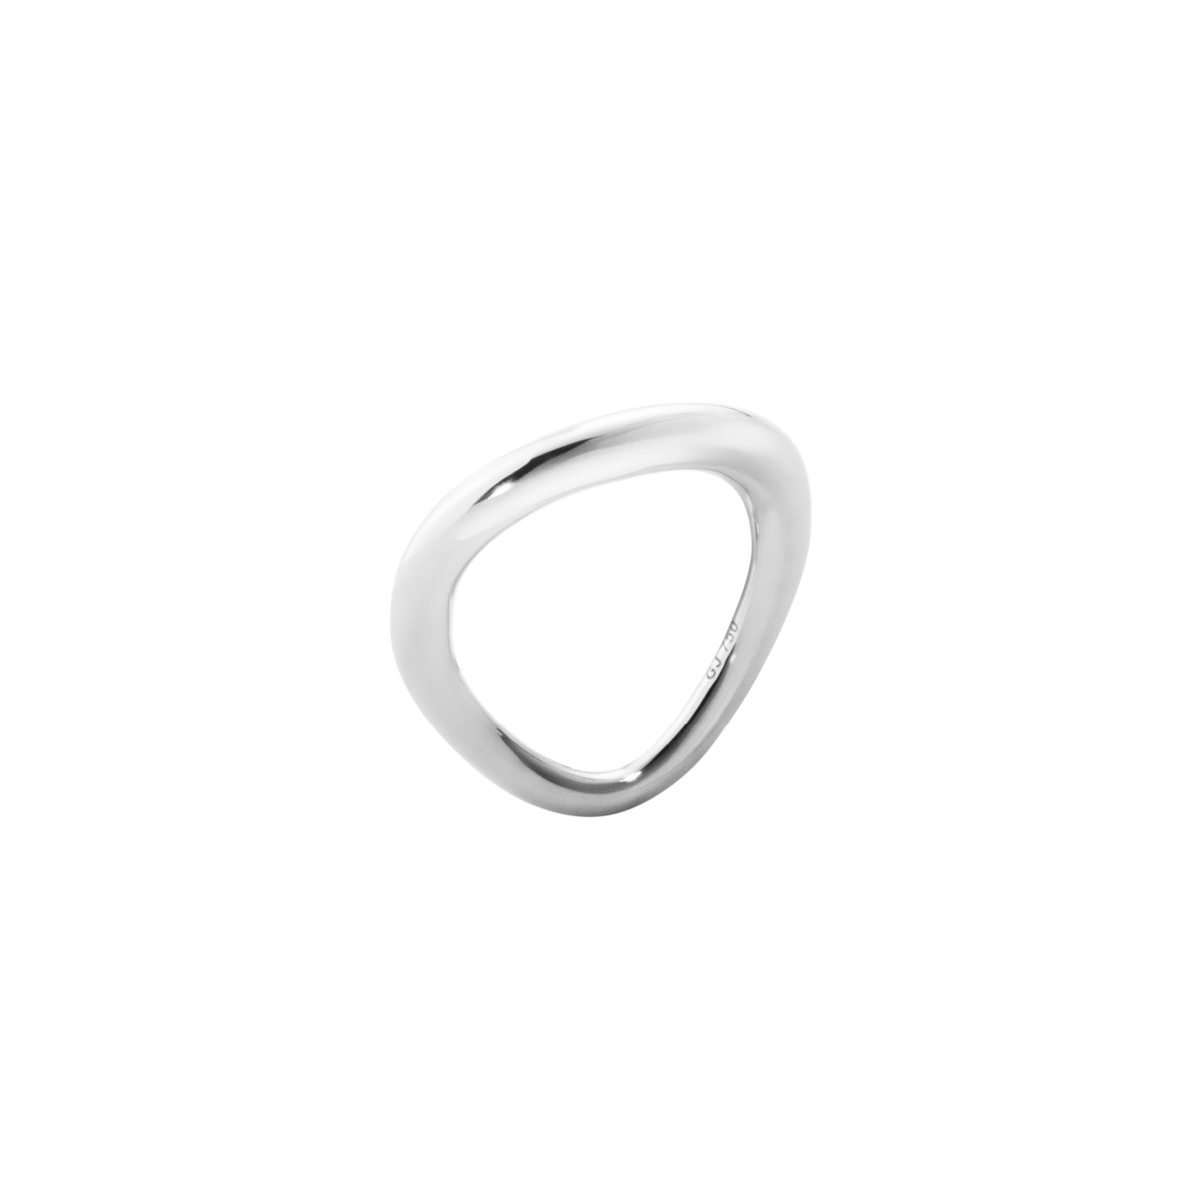 QASIS 4 Ringe - Ø 30cm Ideal Solo Ringe Steckschaum in verschiedenen Größen